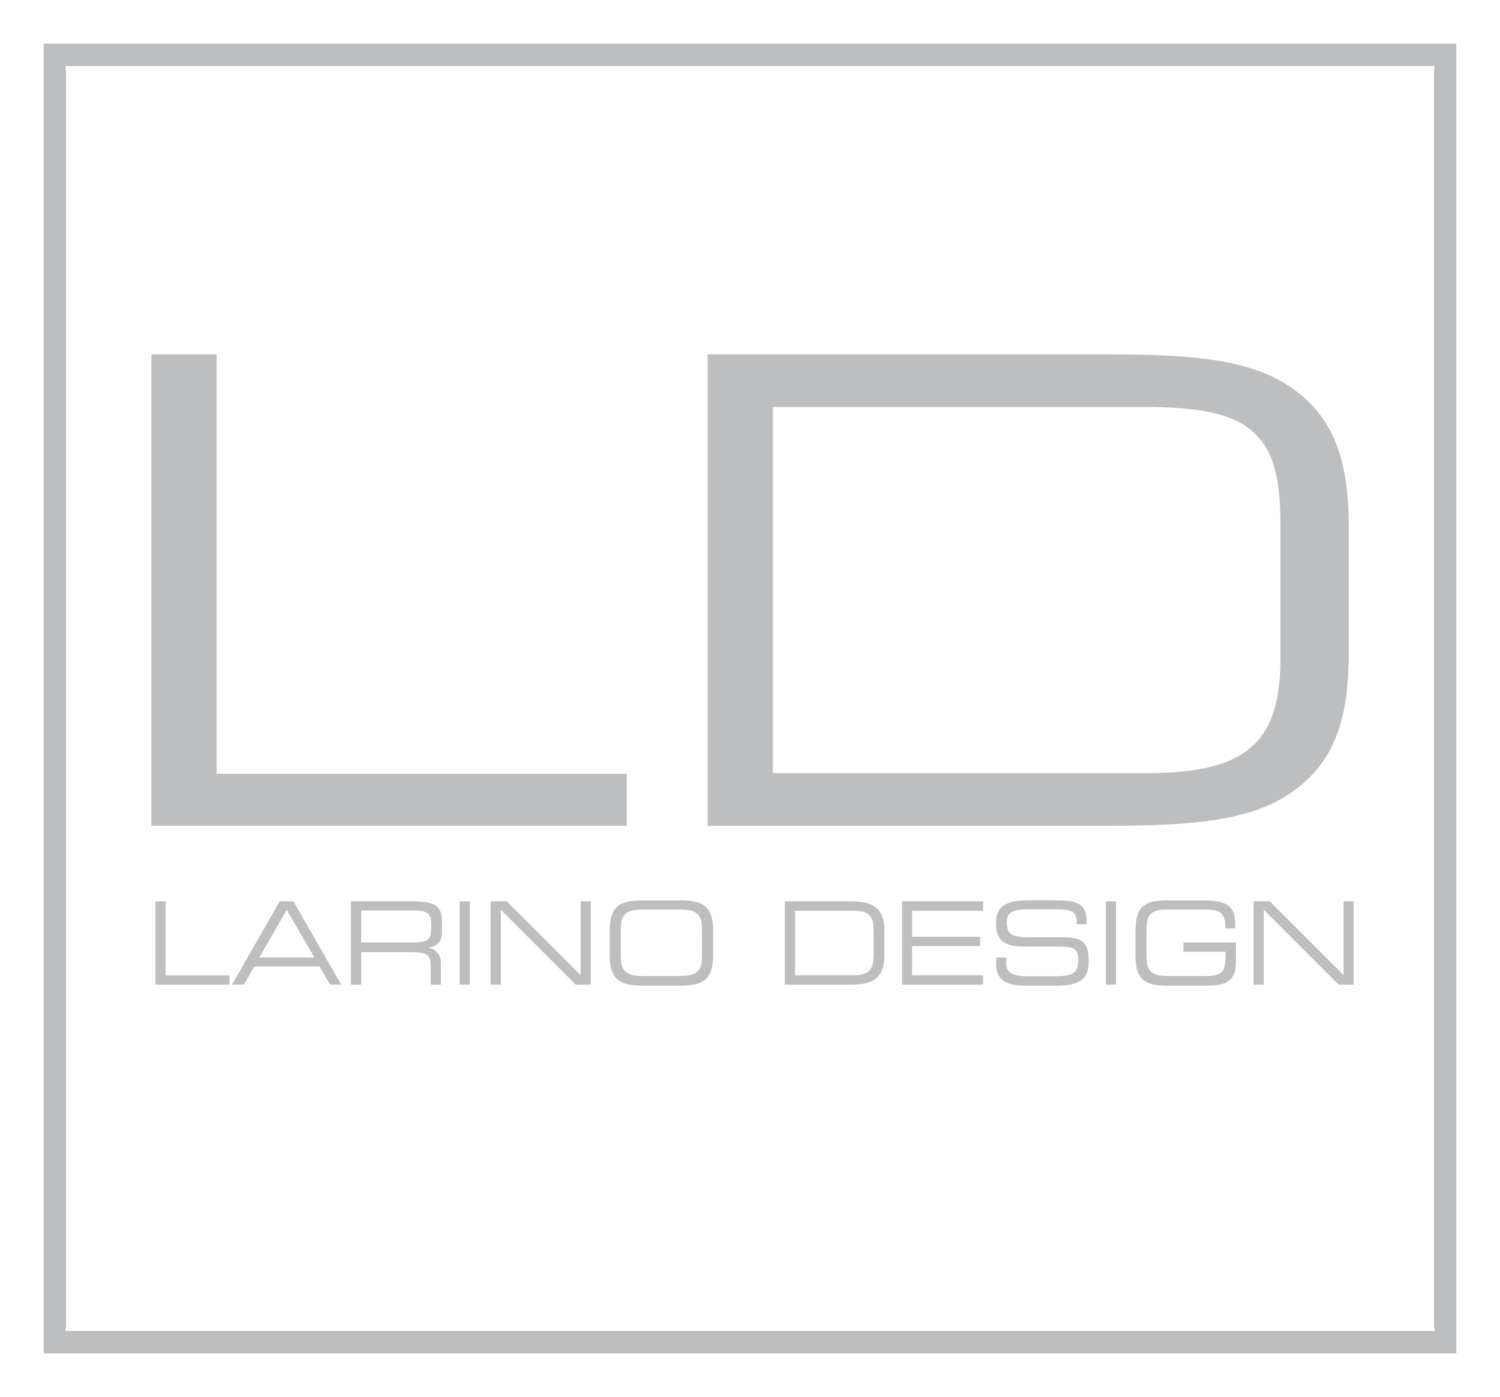 Larino Design